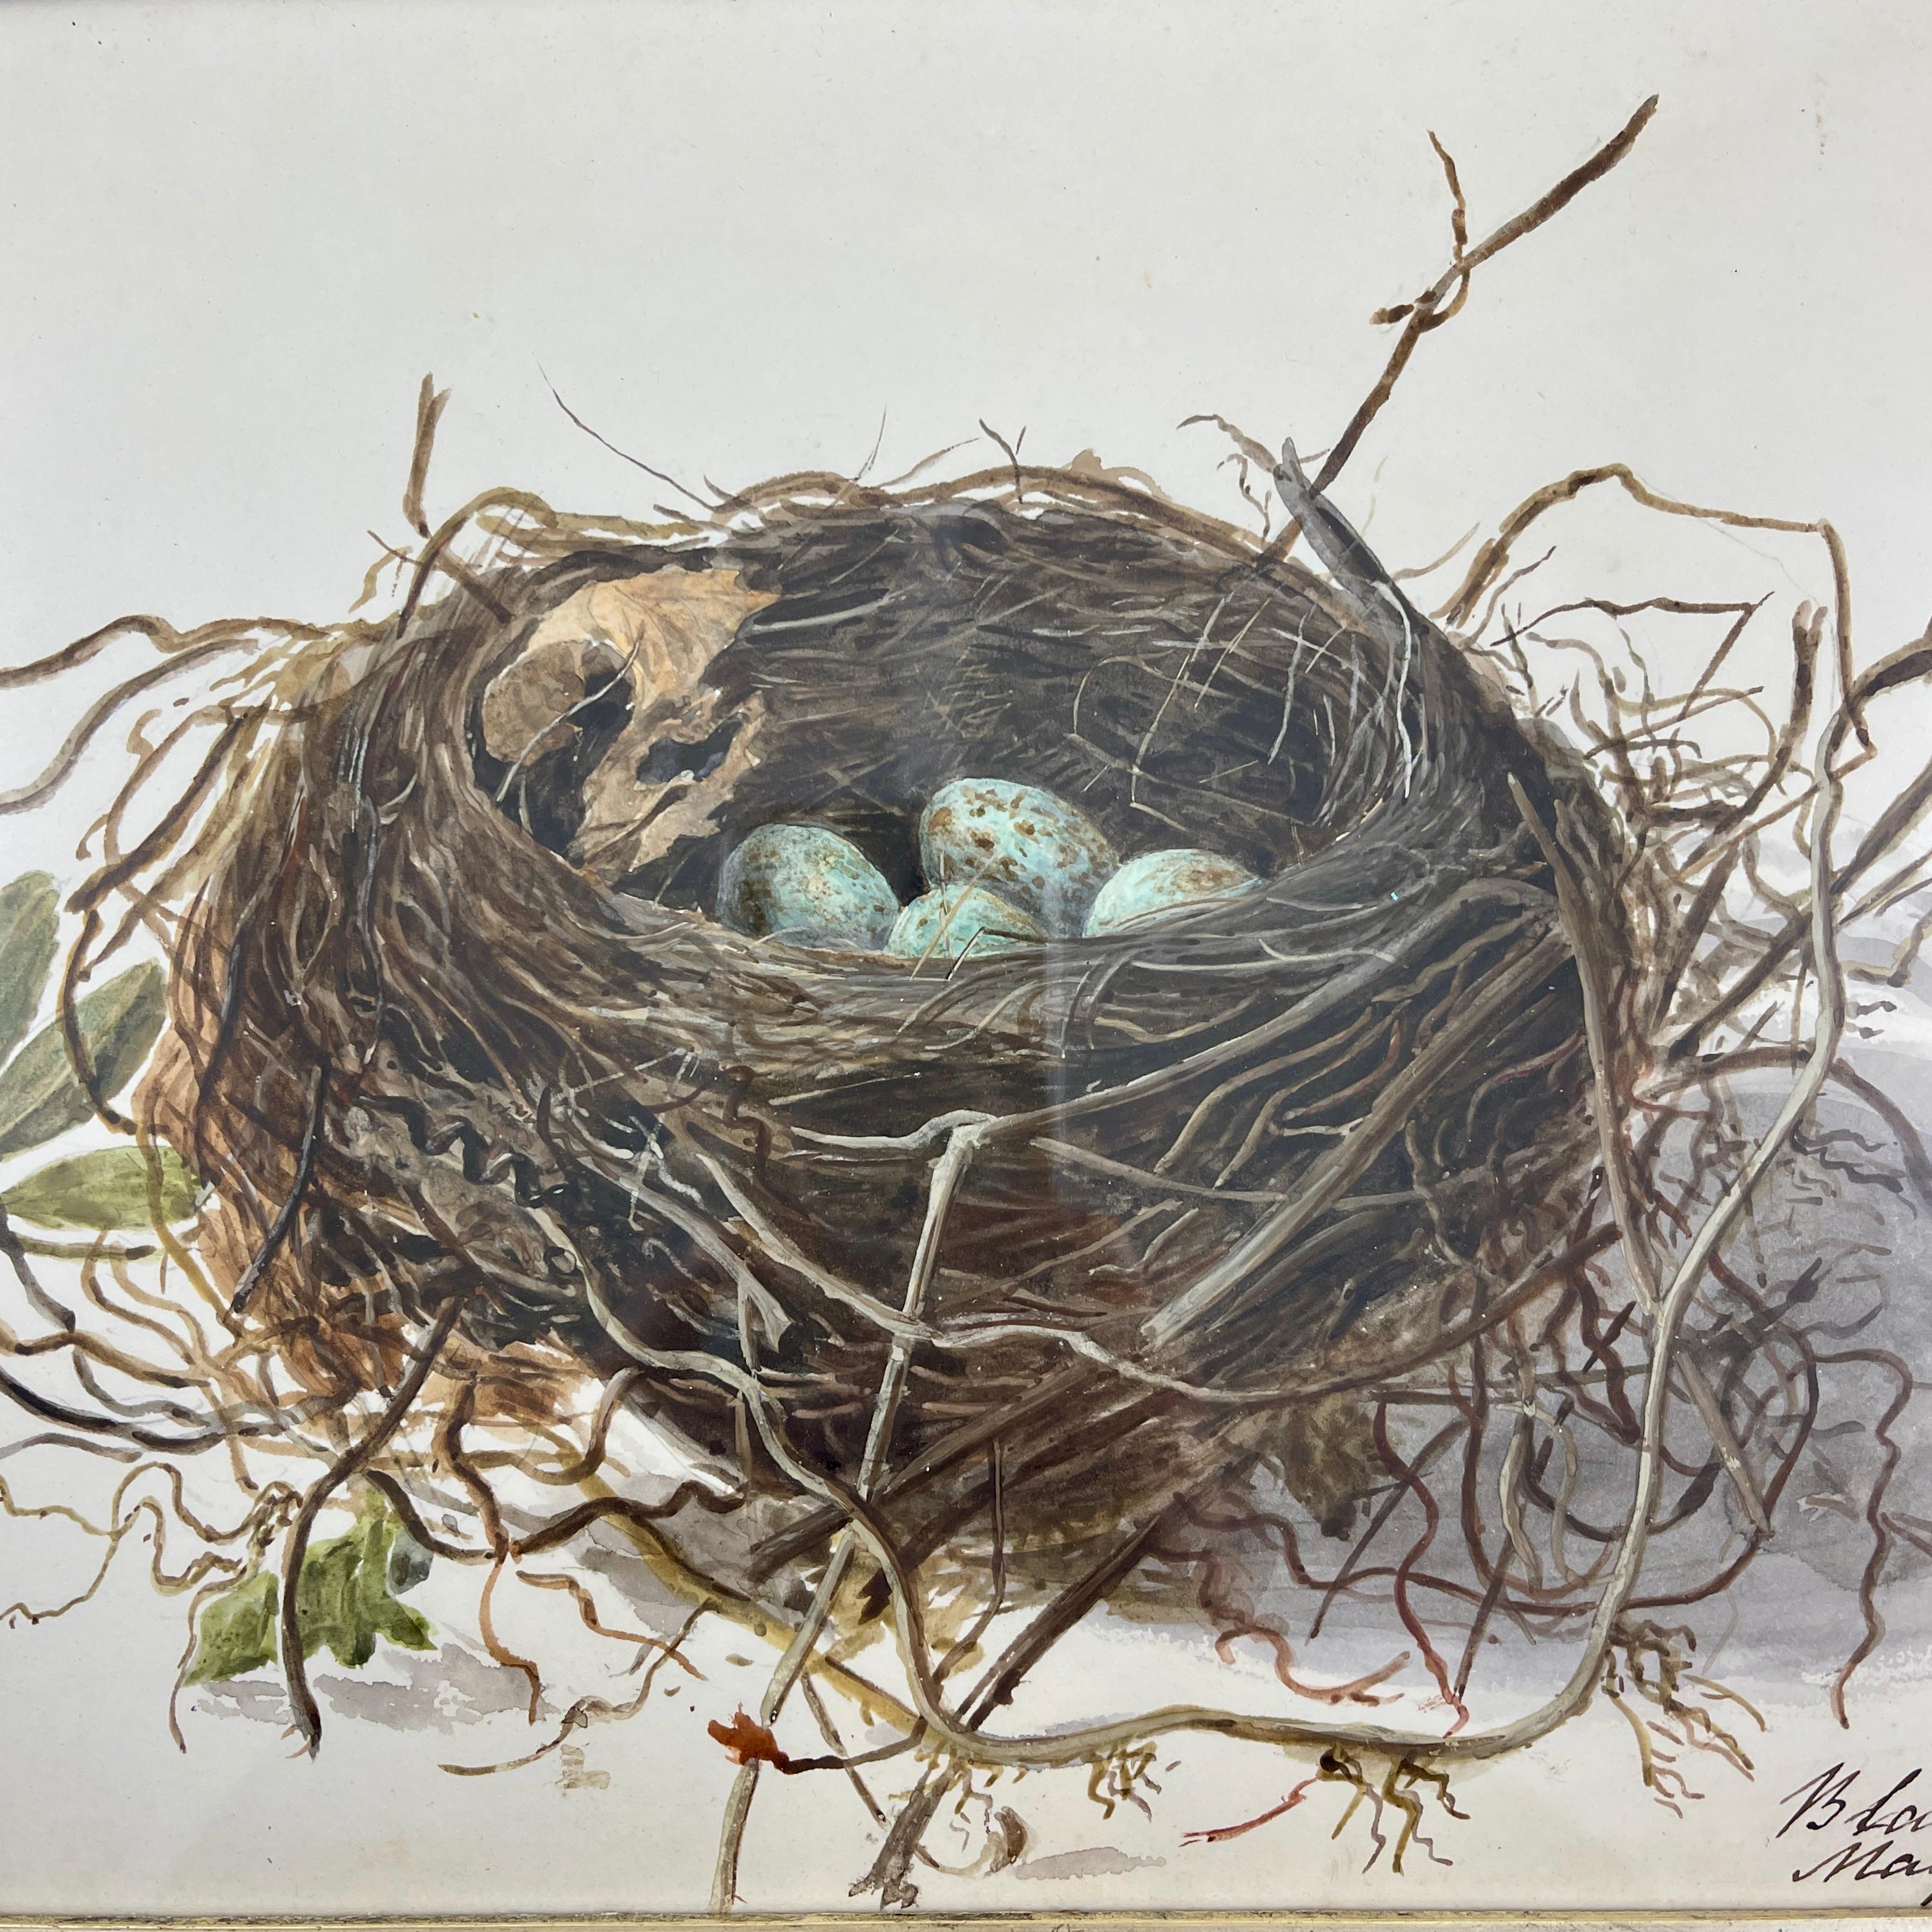 Une aquarelle originale de l'école britannique de la période Régence représentant un nid et des œufs d'oiseaux noirs, montée dans un cadre en érable d'époque géorgienne daté de 1863.

Ces aquarelles étaient en grande partie peintes par des jeunes